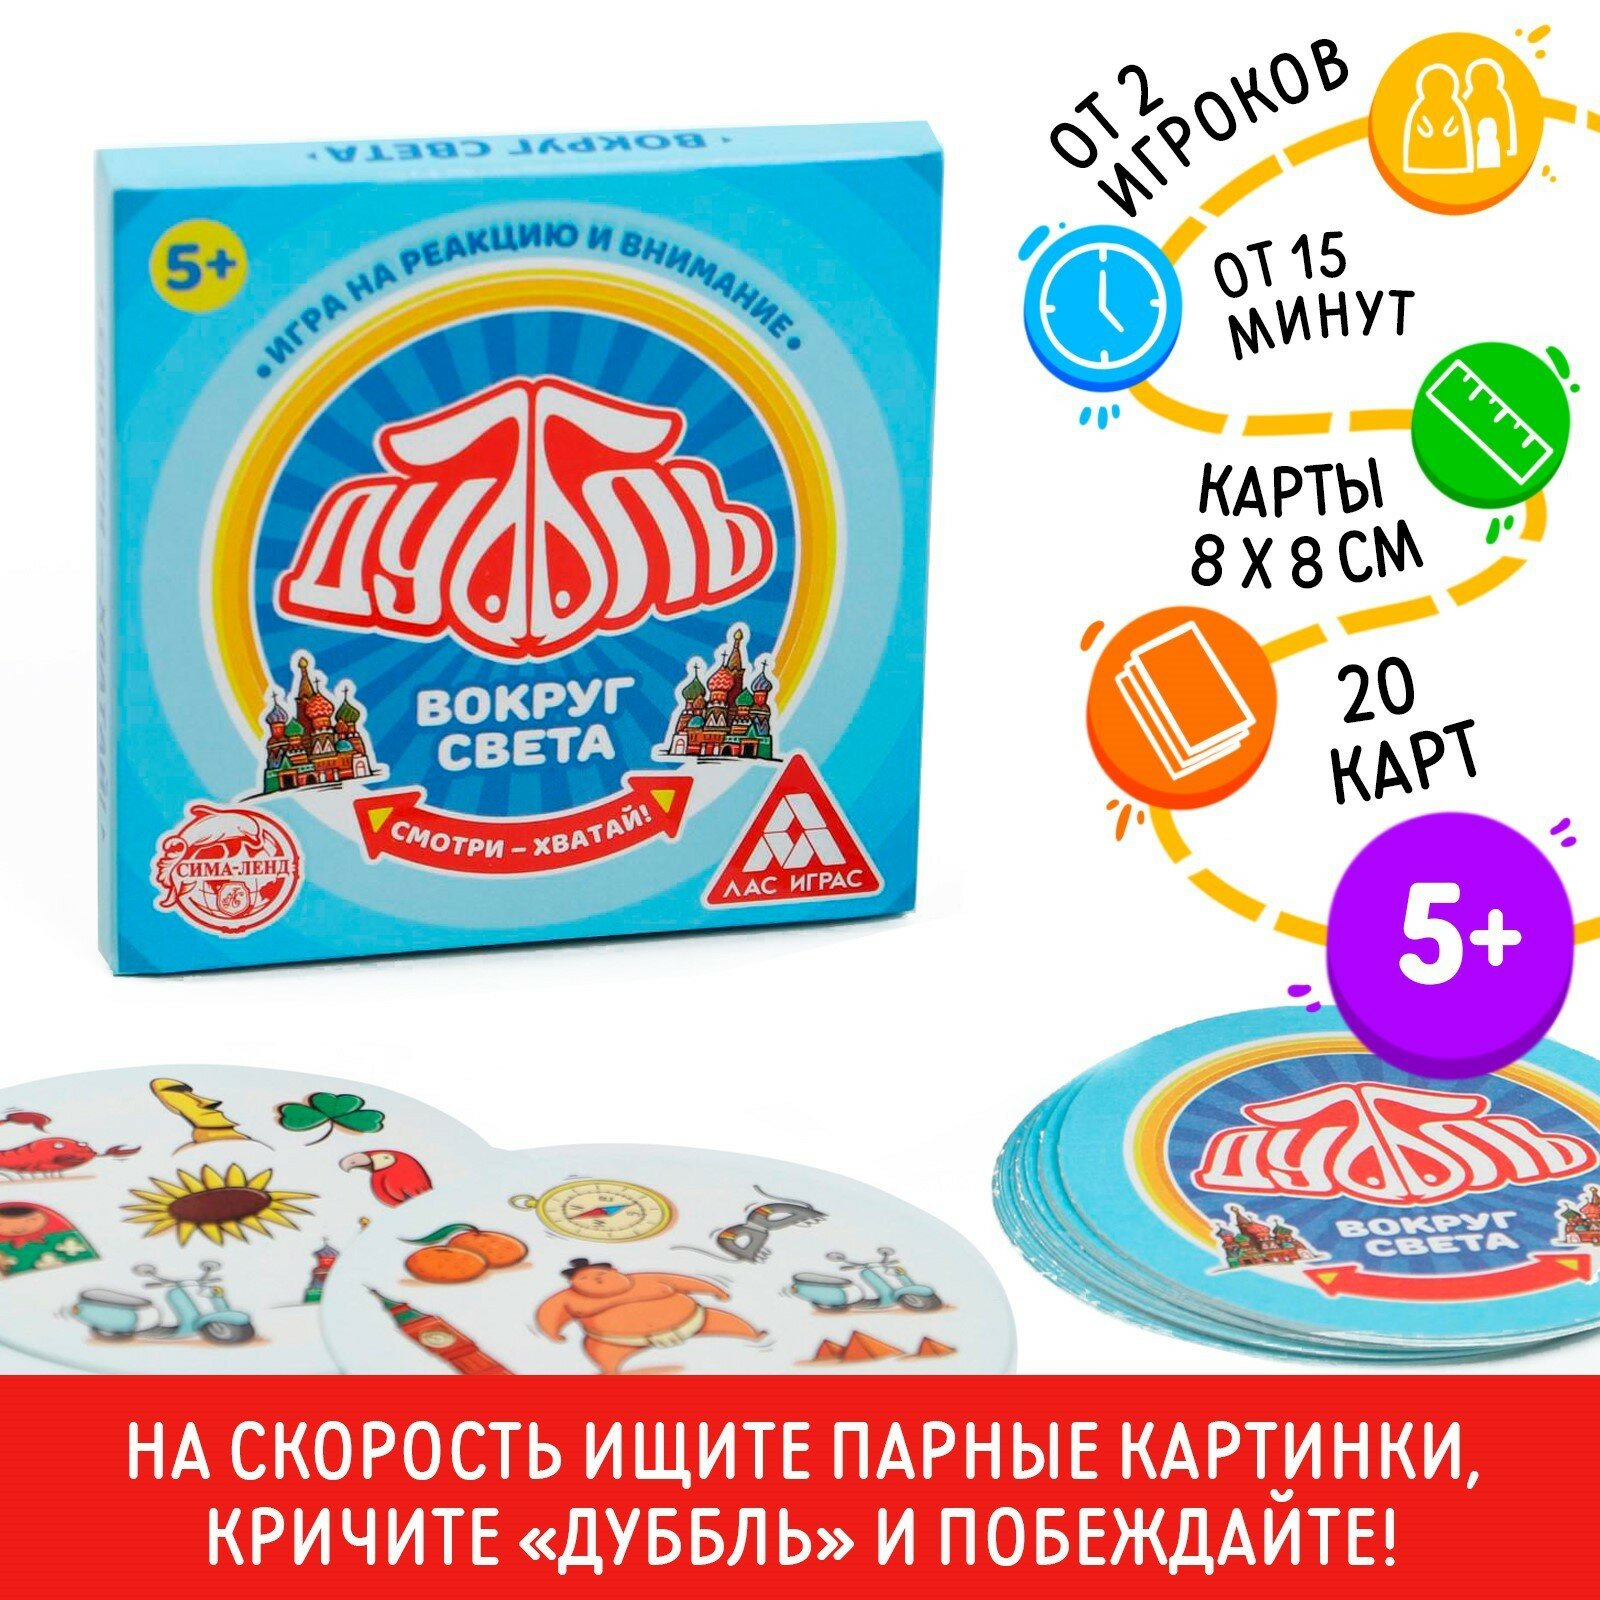 Игра на внимание "Дуббль Вокруг света", 20 карт, для детей и малышей от 5 лет